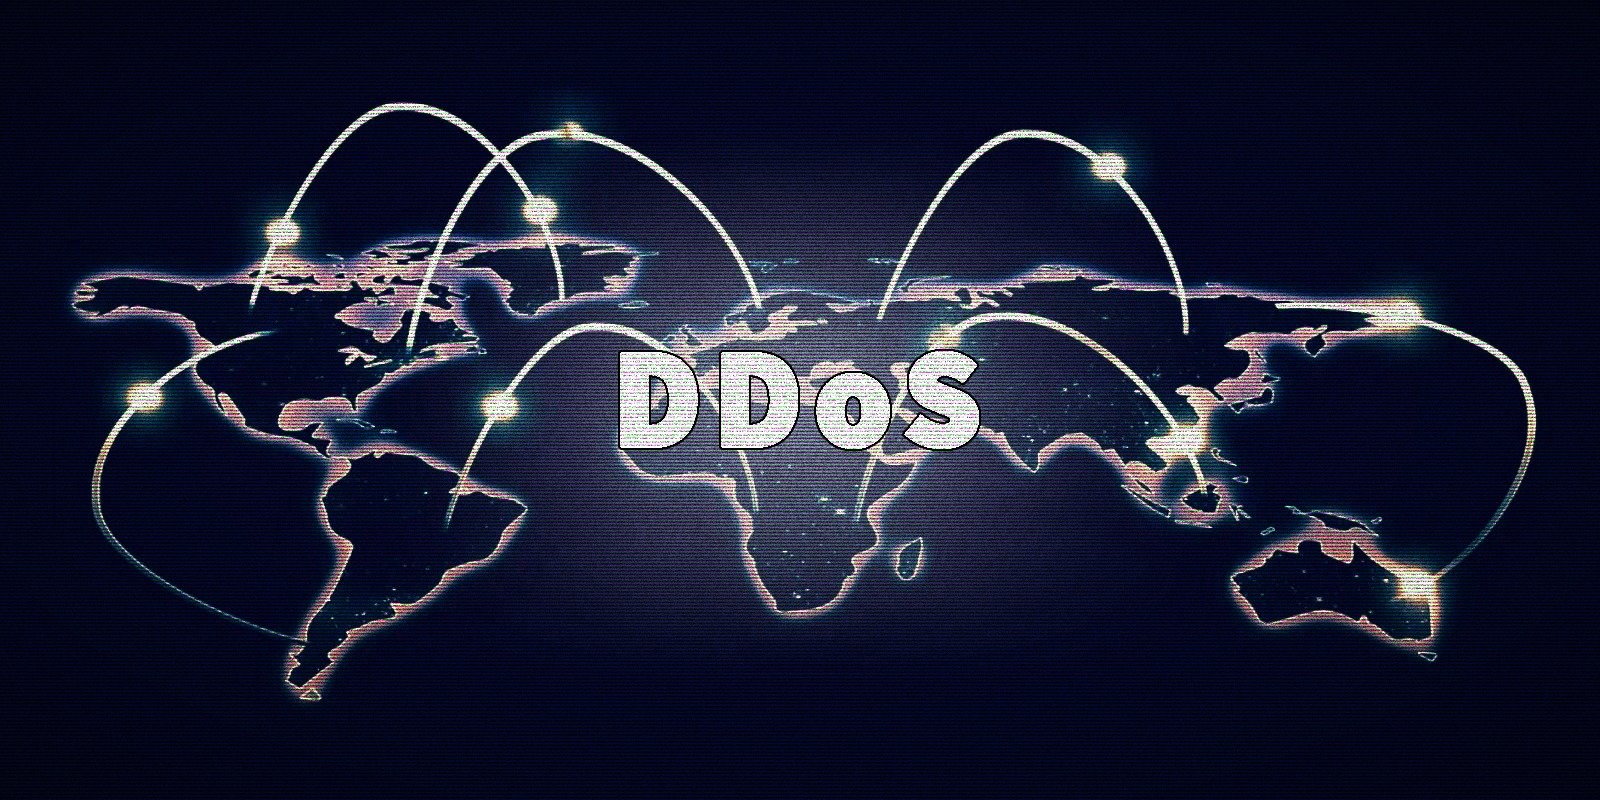 Bijgewerkte RapperBot-malware richt zich op gameservers in DDoS-aanvallen